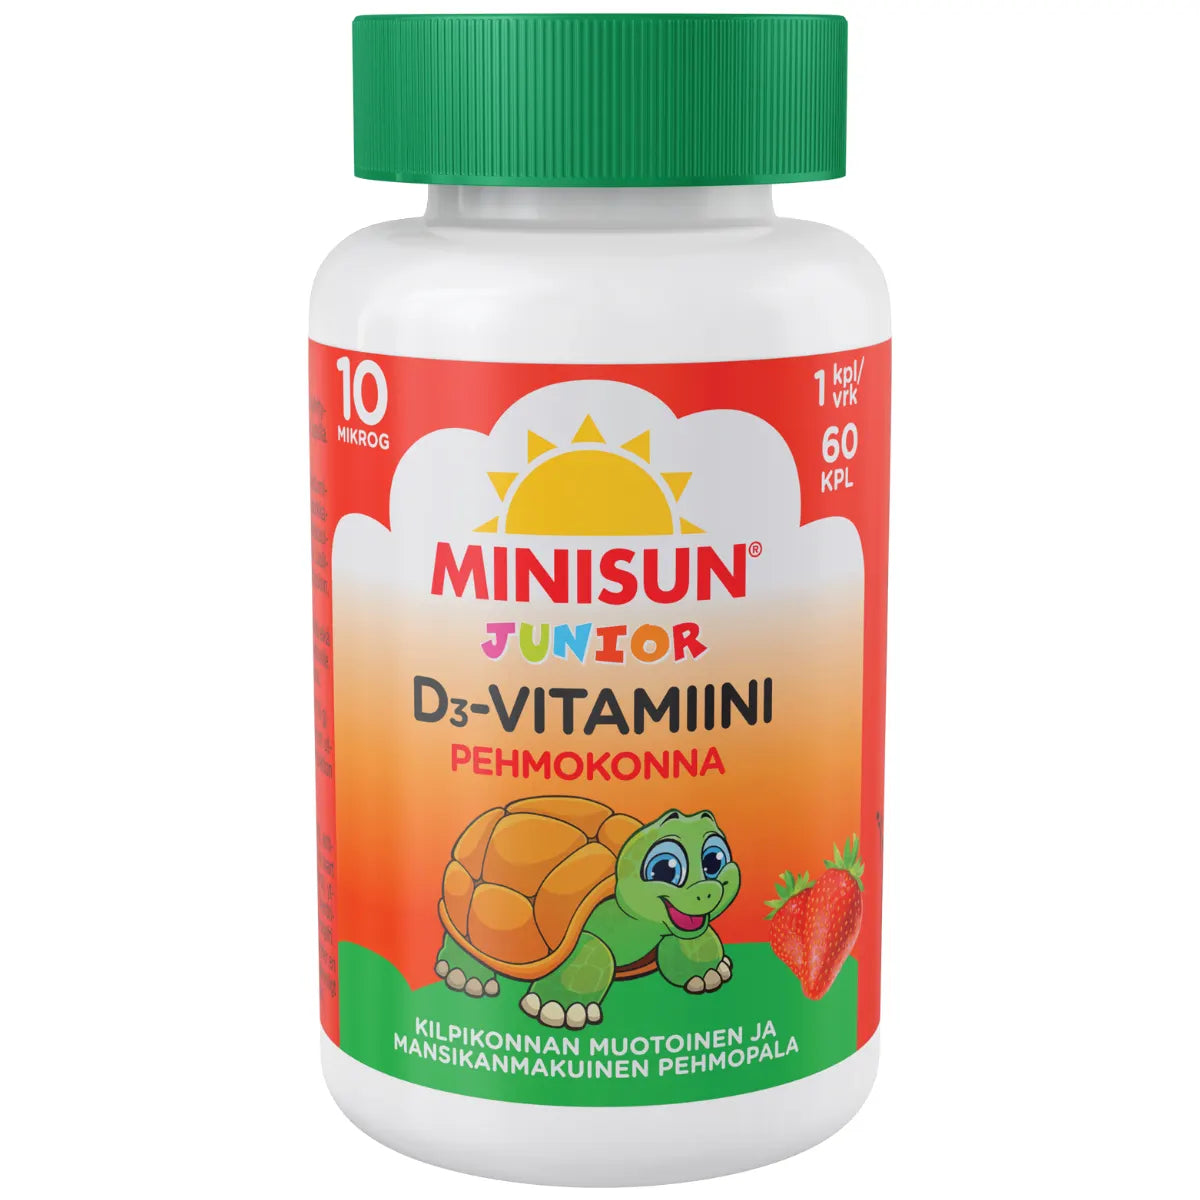 MINISUN Junior Pehmokonna mansikka D-vitamiini 10 µg 60 kpl